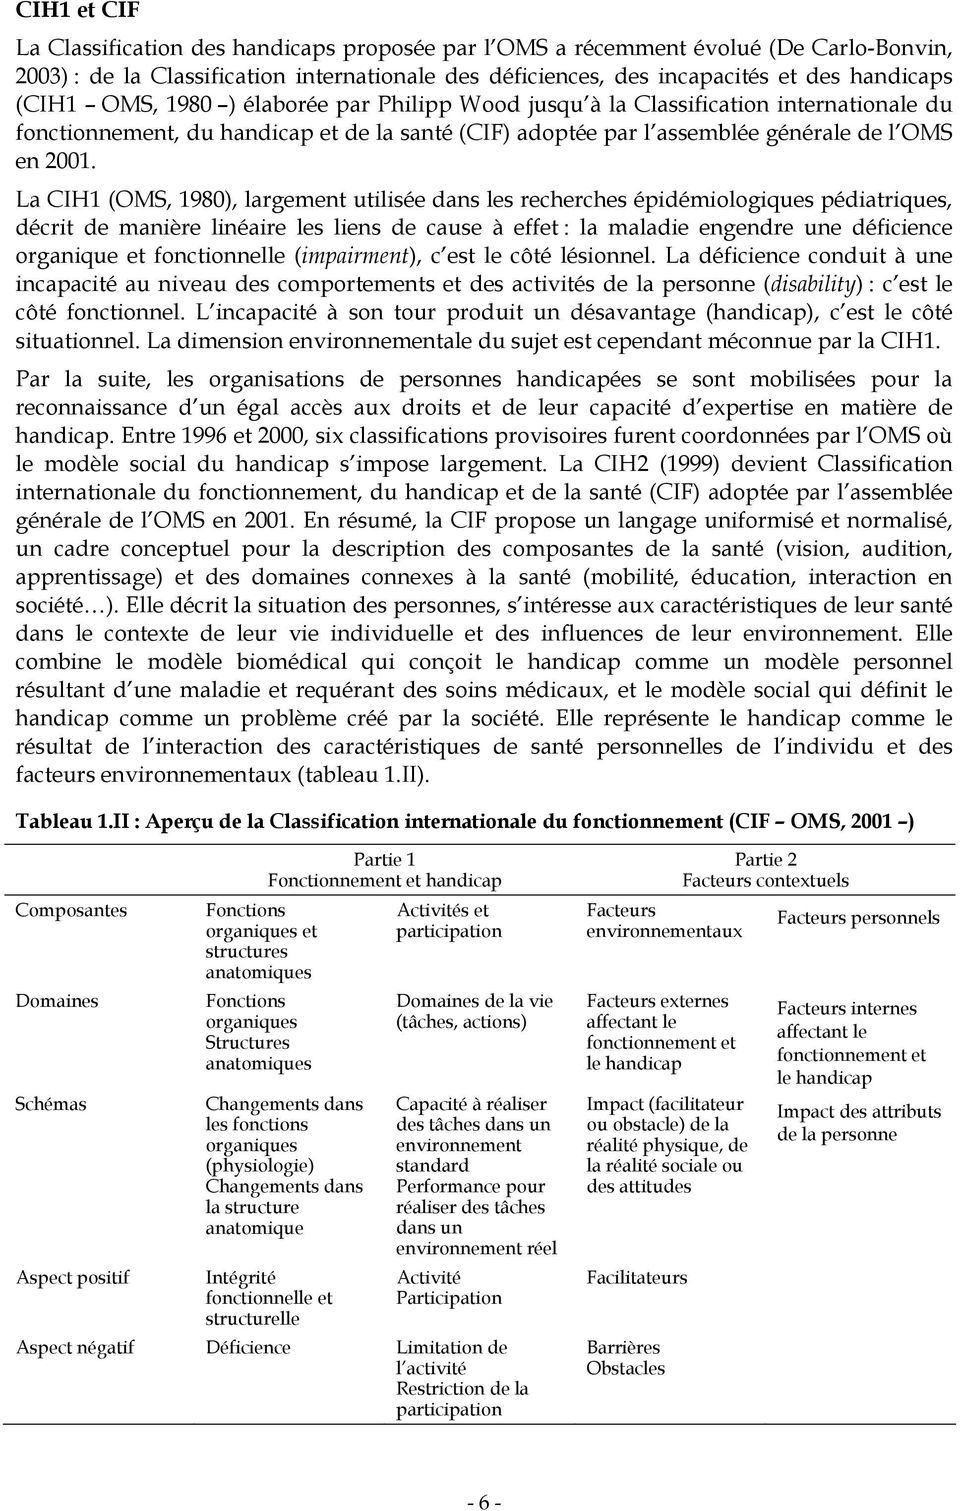 La CIH1 (OMS, 1980), largement utilisée dans les recherches épidémiologiques pédiatriques, décrit de manière linéaire les liens de cause à effet : la maladie engendre une déficience organique et